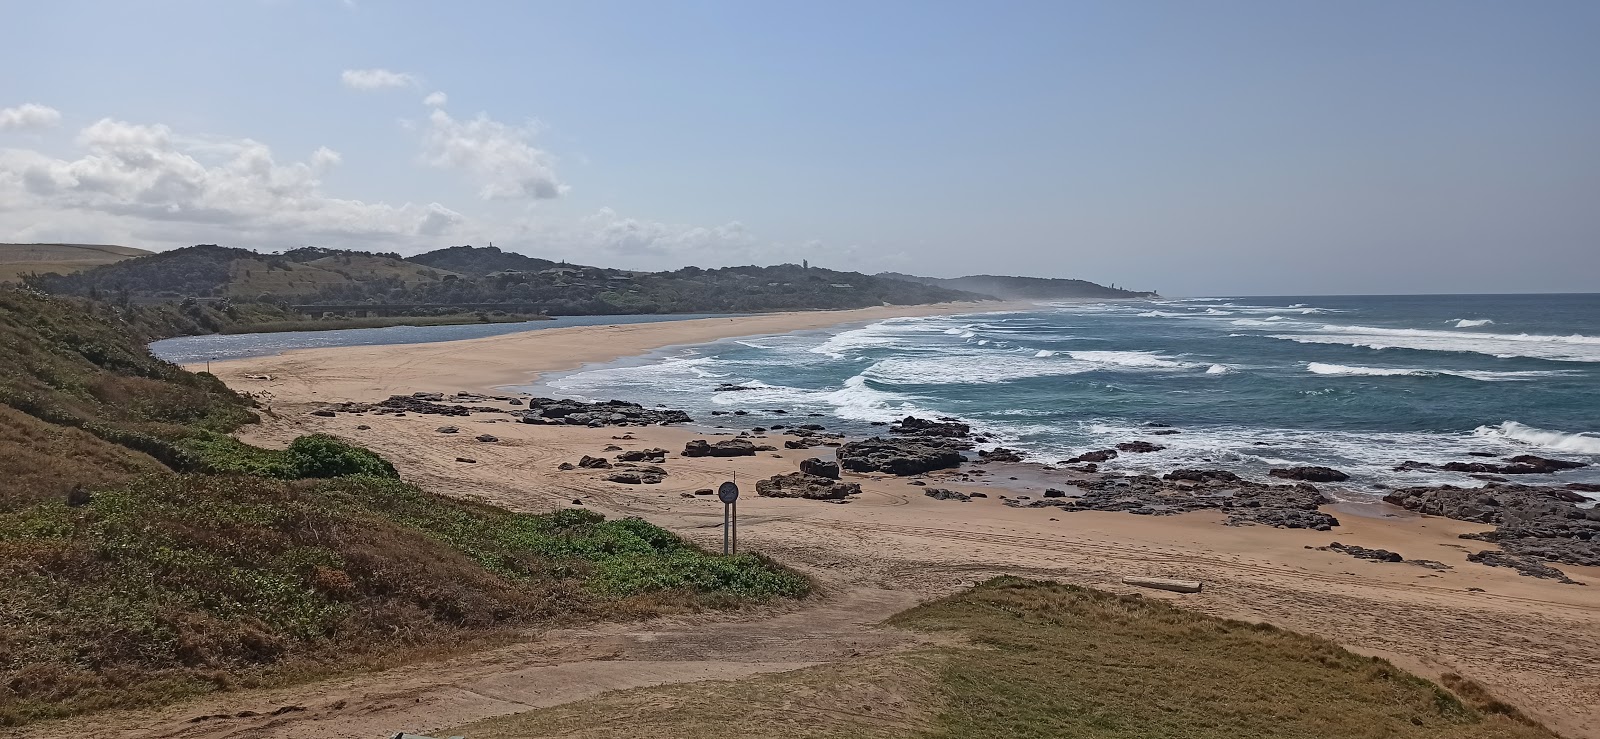 Foto de Mtwalume beach con recta y larga